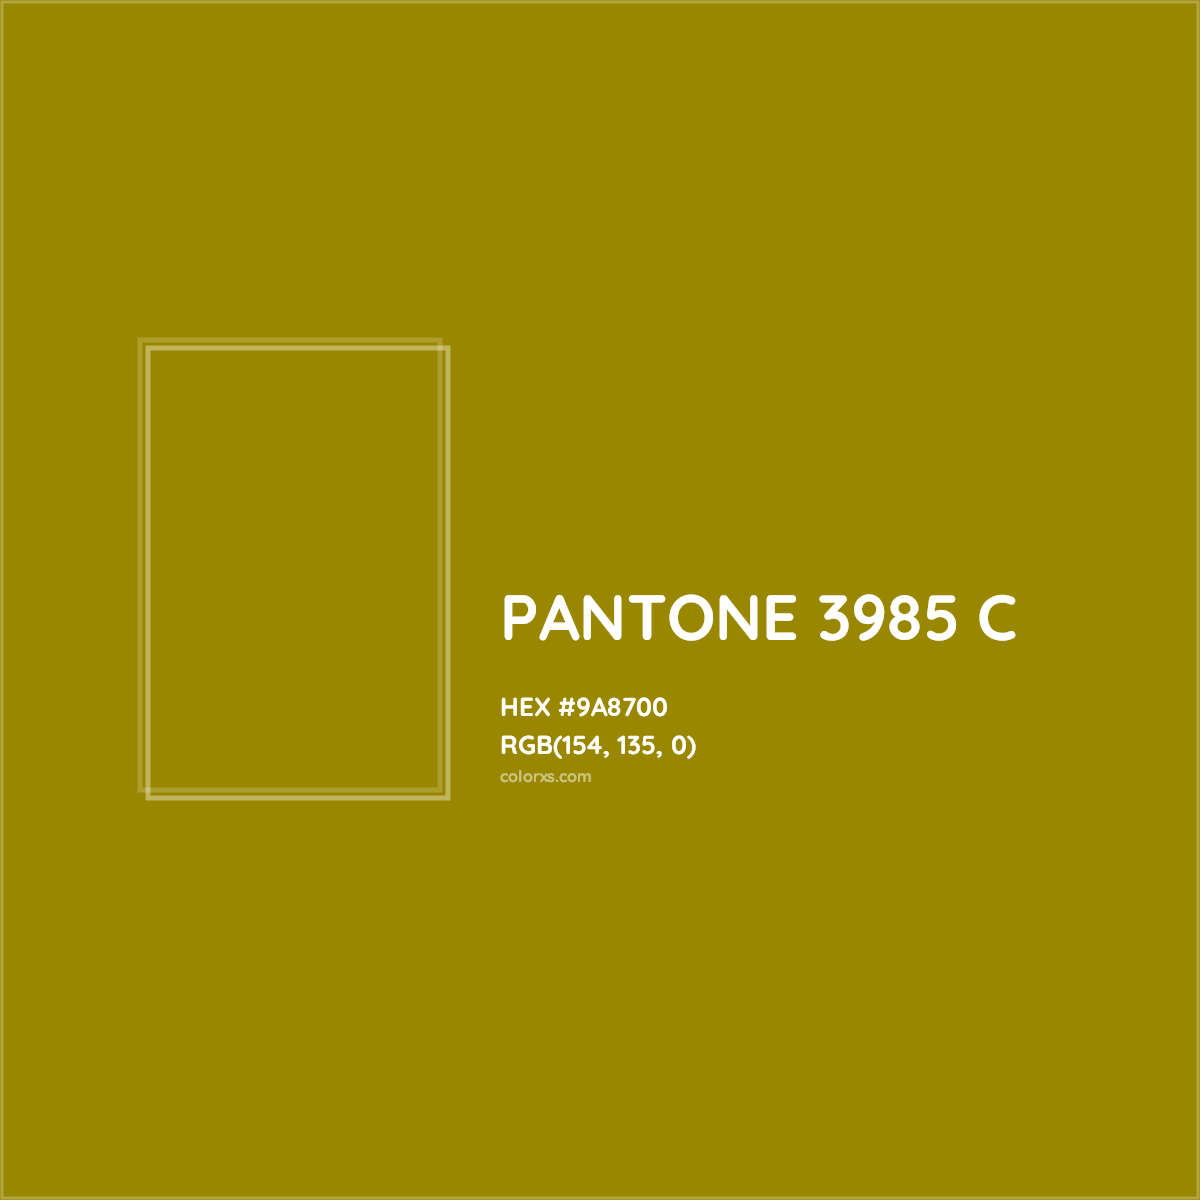 HEX #9A8700 PANTONE 3985 C CMS Pantone PMS - Color Code